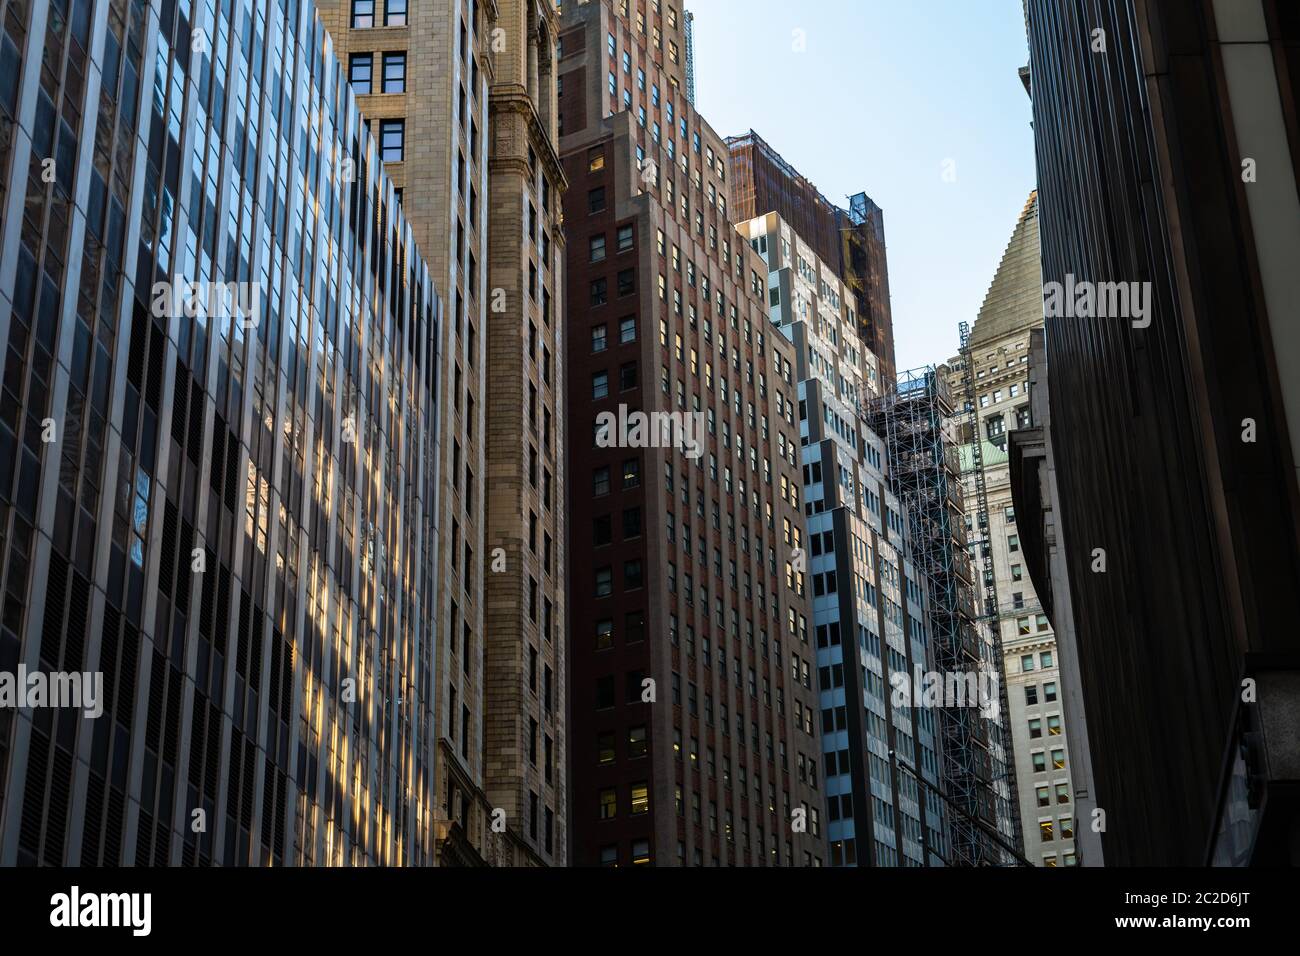 New York City / USA - AOÛT 22 2018: Gratte-ciel et vieux bâtiments de Wall Street dans Lower Manhattan Banque D'Images